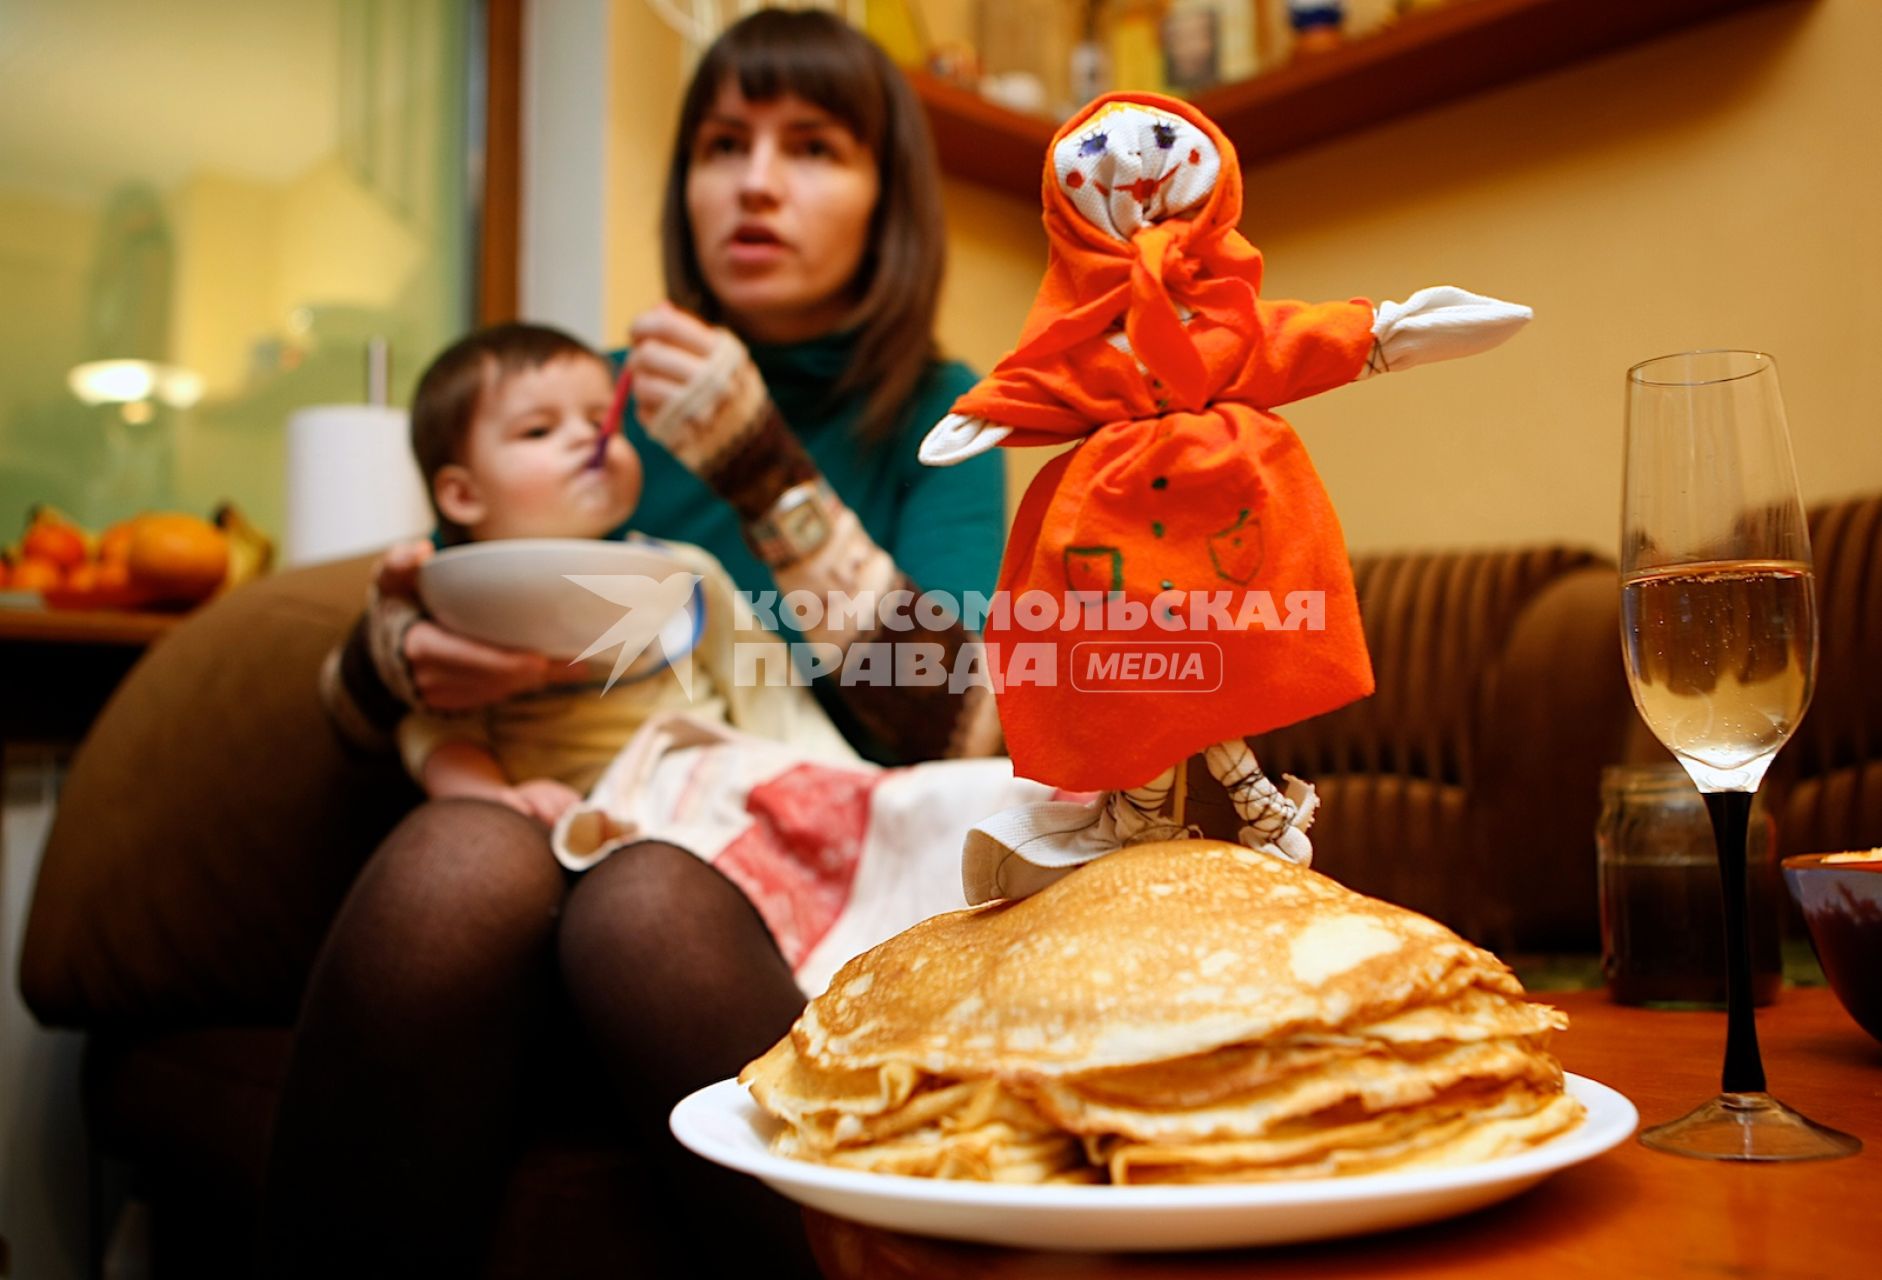 Девушка кормит ребенка на фоне тарелки с блинами и чучела масленицы.